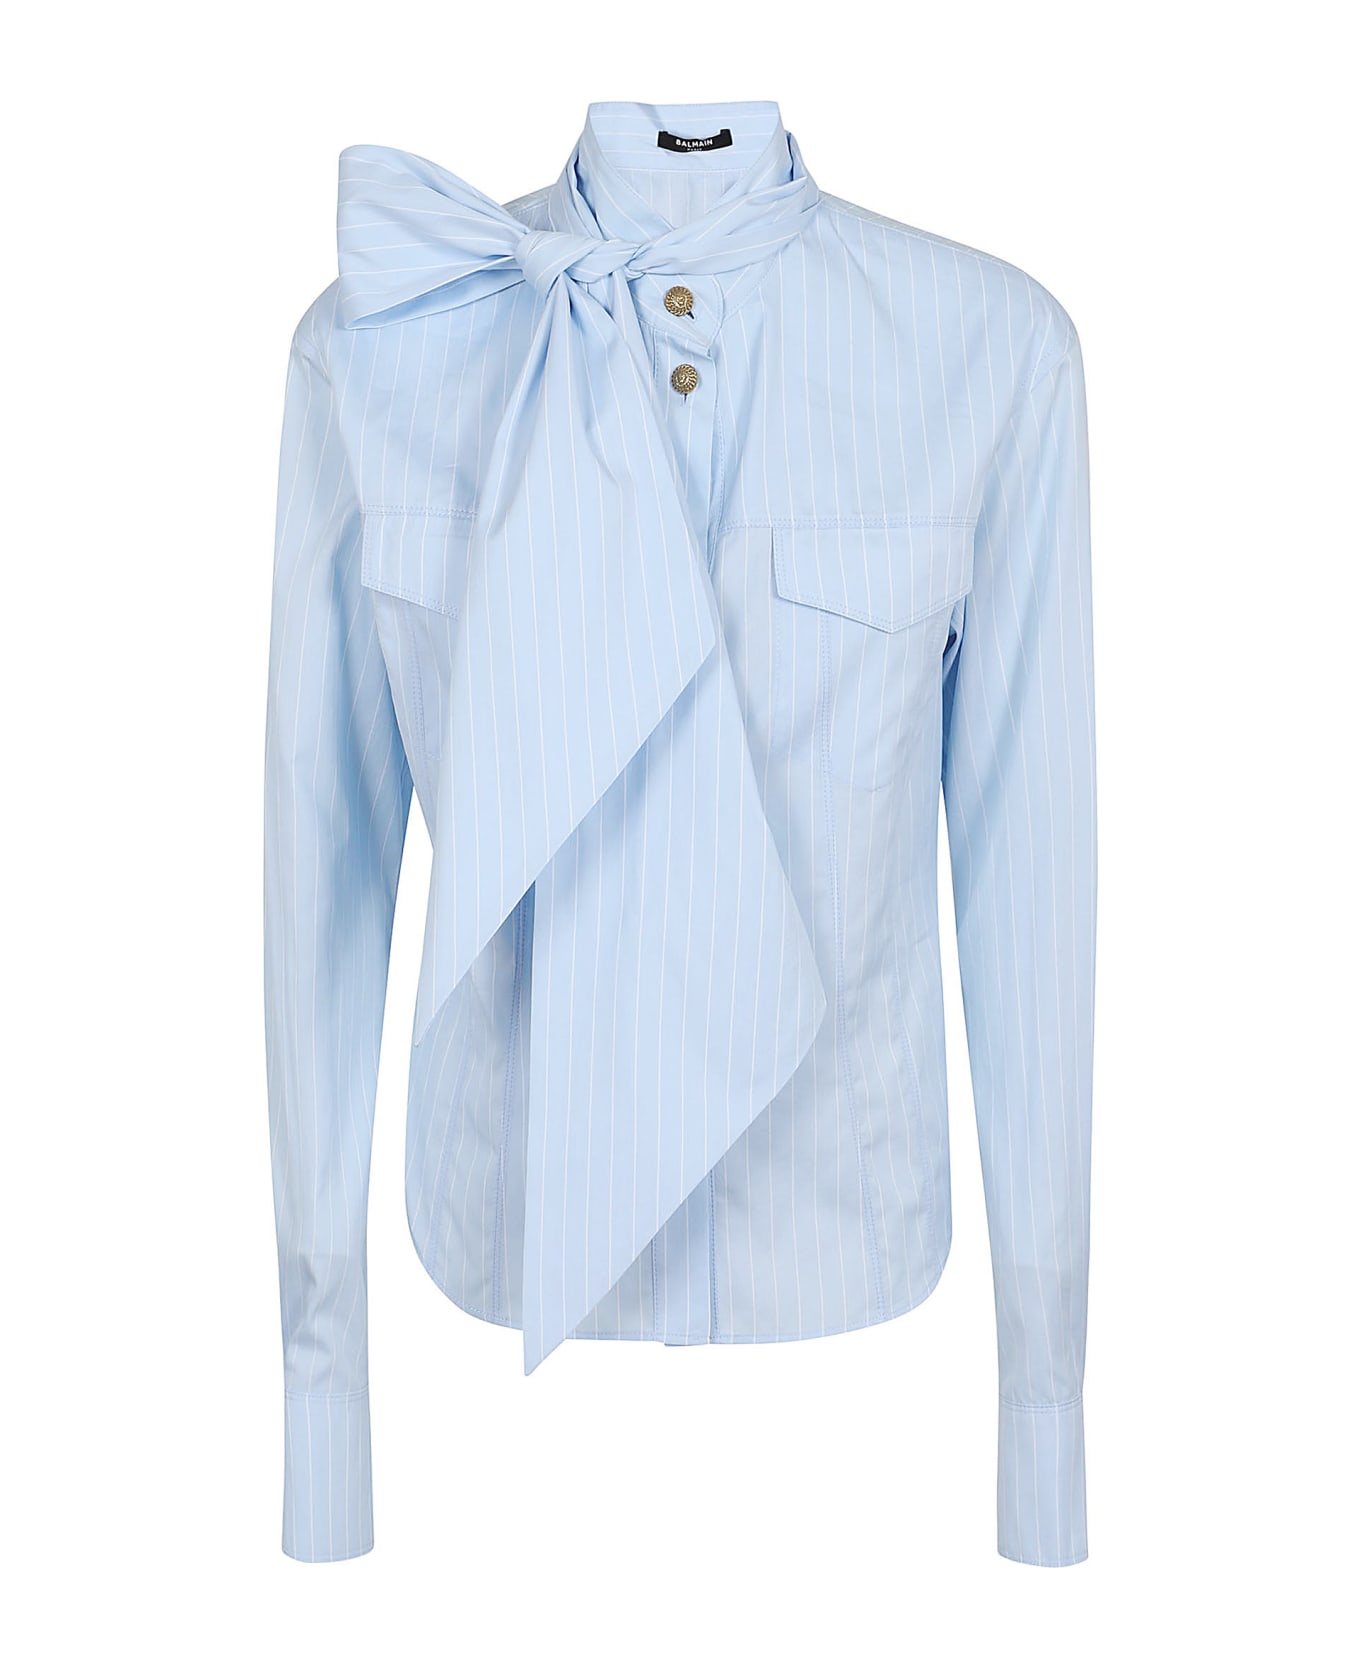 Balmain Pussy Bow Striped Cotton Popeline Shirt - Slj Bleu Pale Blanc